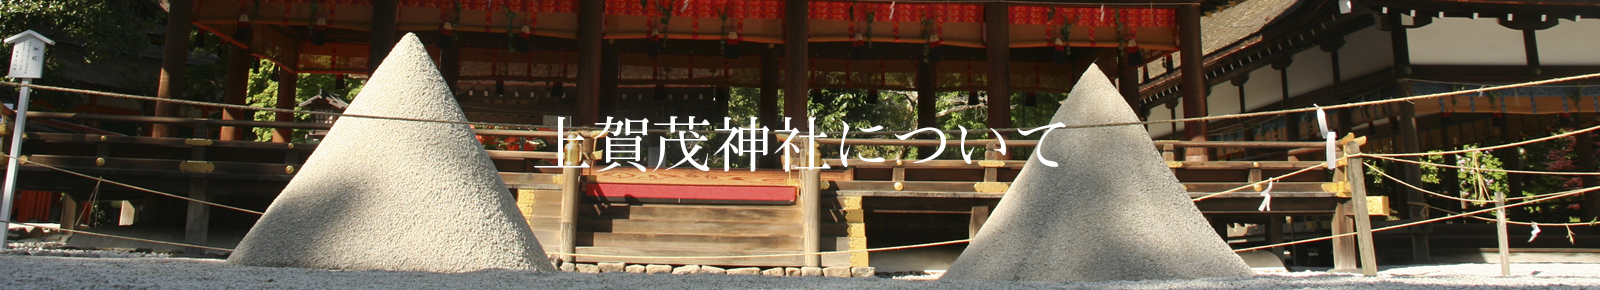 上賀茂神社について